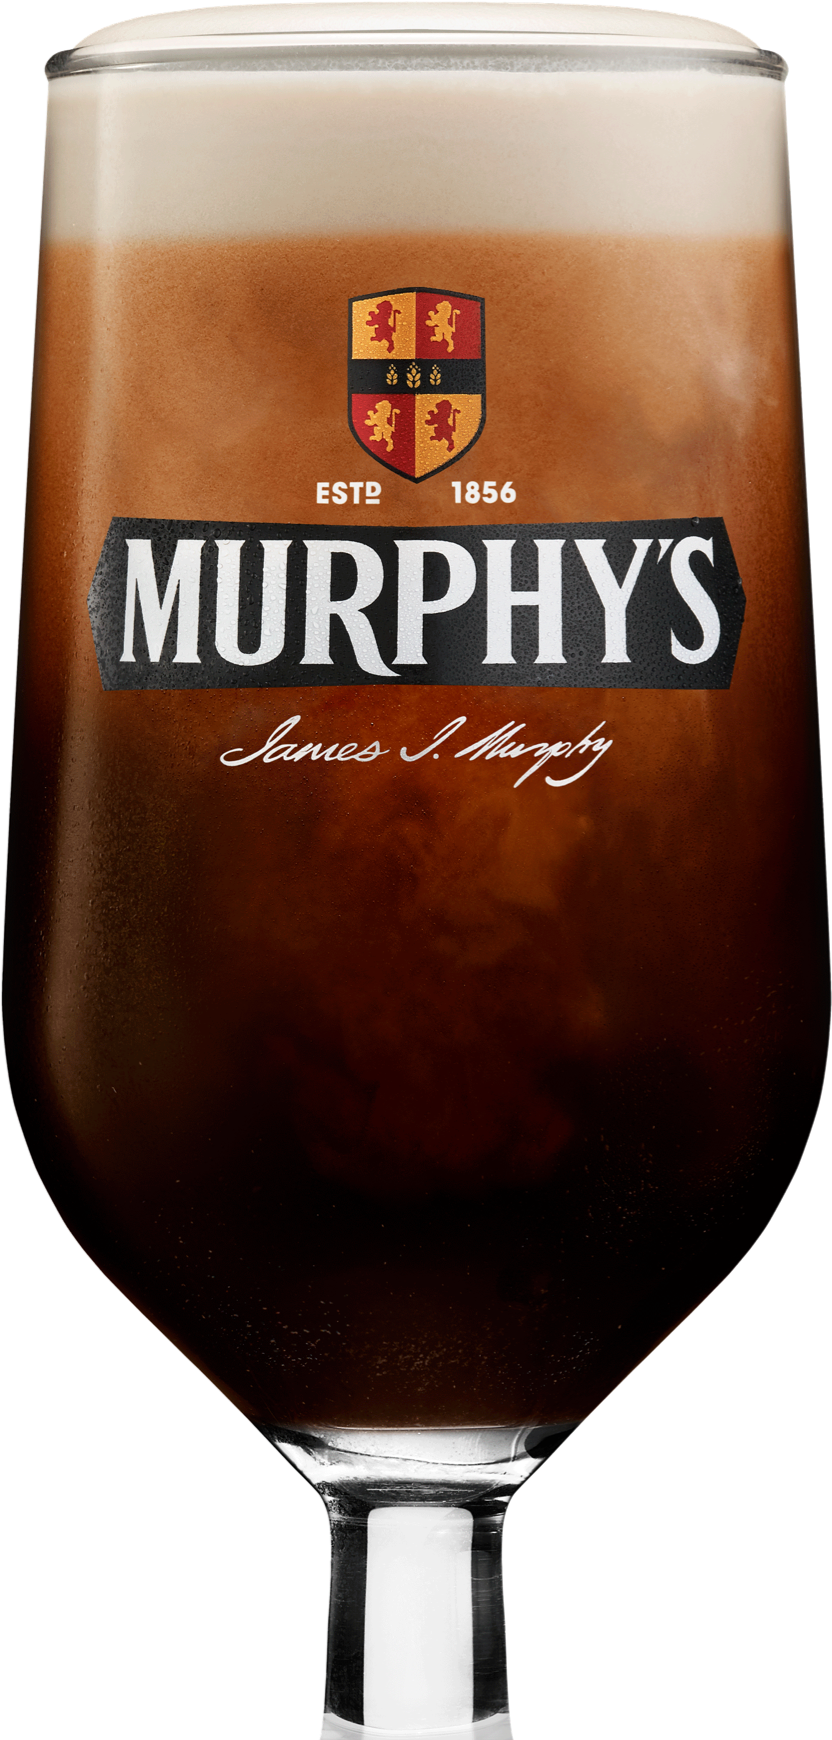 A pint of Murphy's